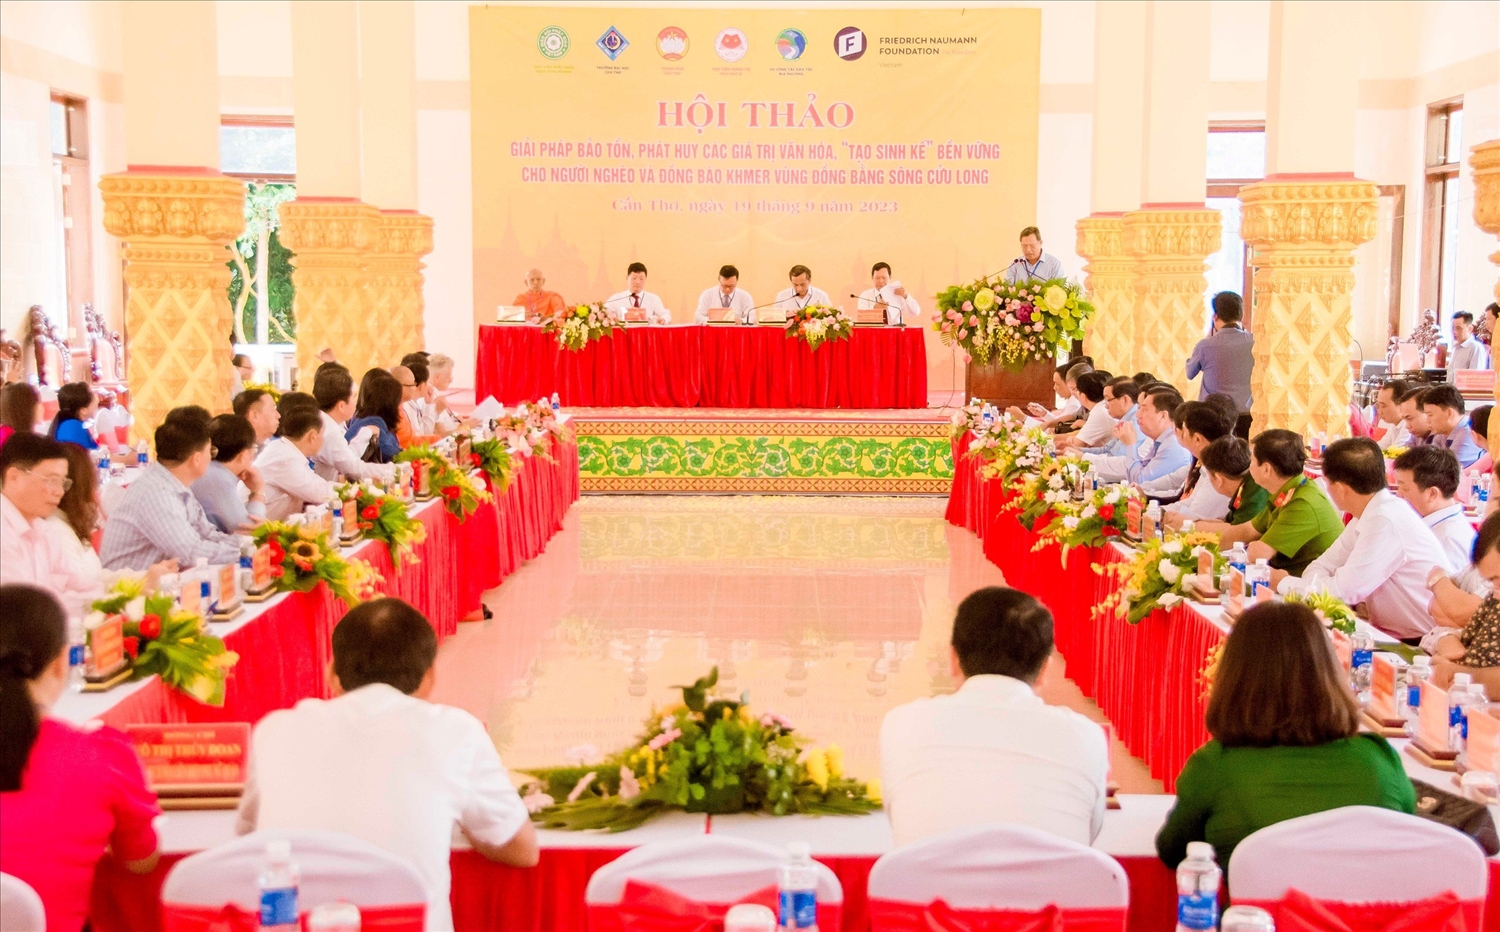  Quang cảnh Hội thảo Giải pháp bảo tồn, phát huy các giá trị văn hóa, “tạo sinh kế” bền vững cho người nghèo và đồng bào Khmer vùng ĐBSCL